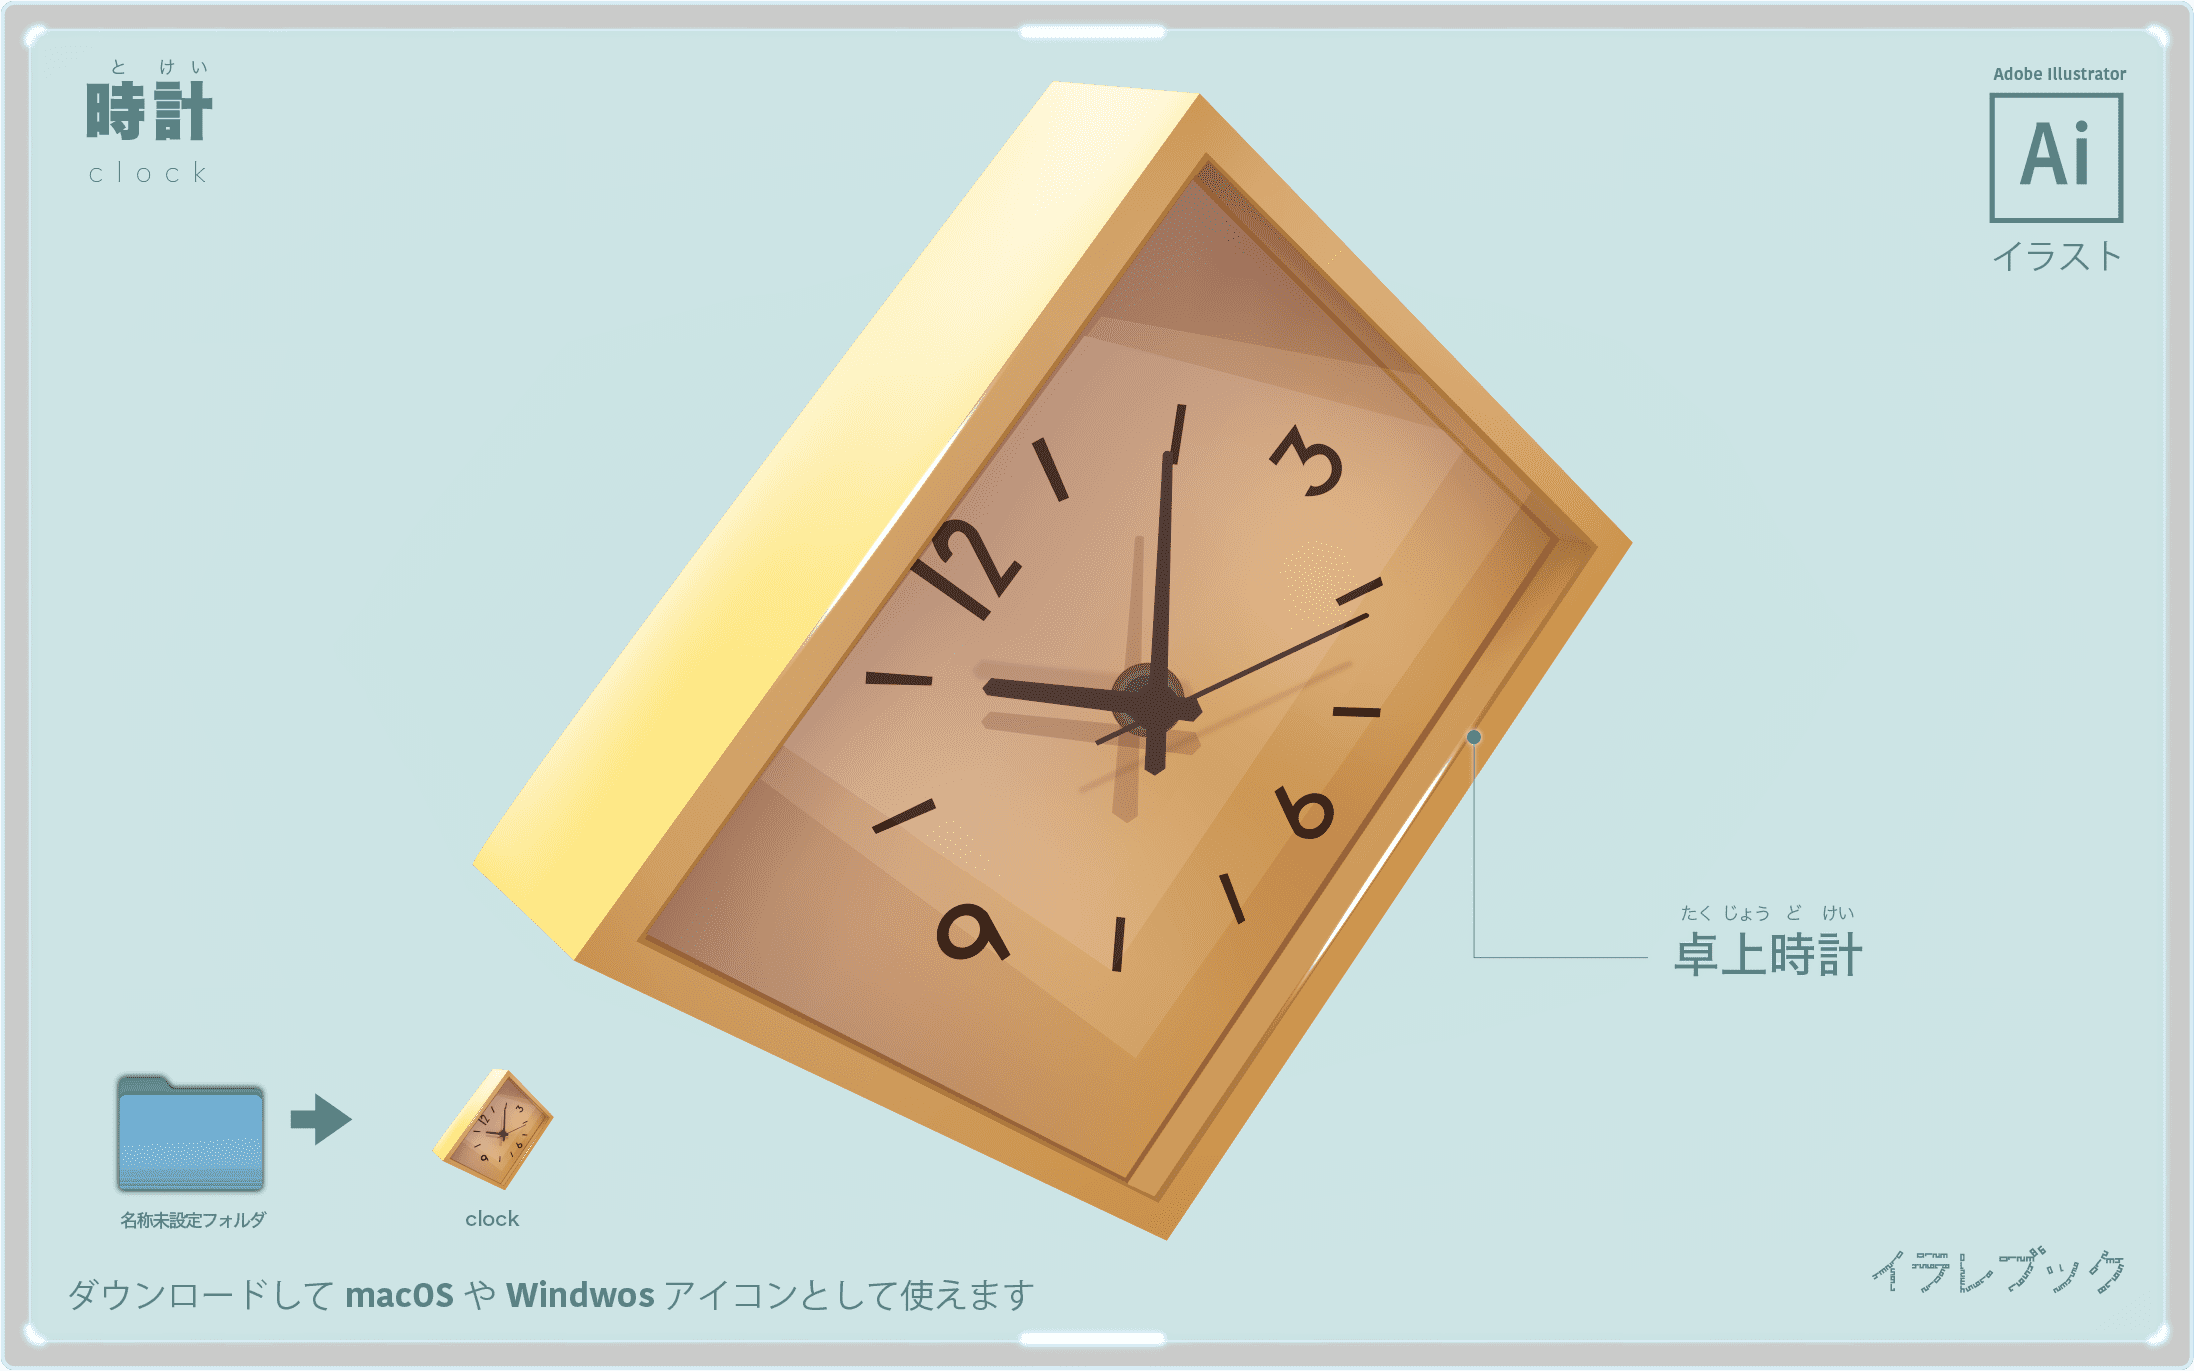 時計 イラスト 歴史 効率化 ルール 種類 描き方 イラレマンガ News000017